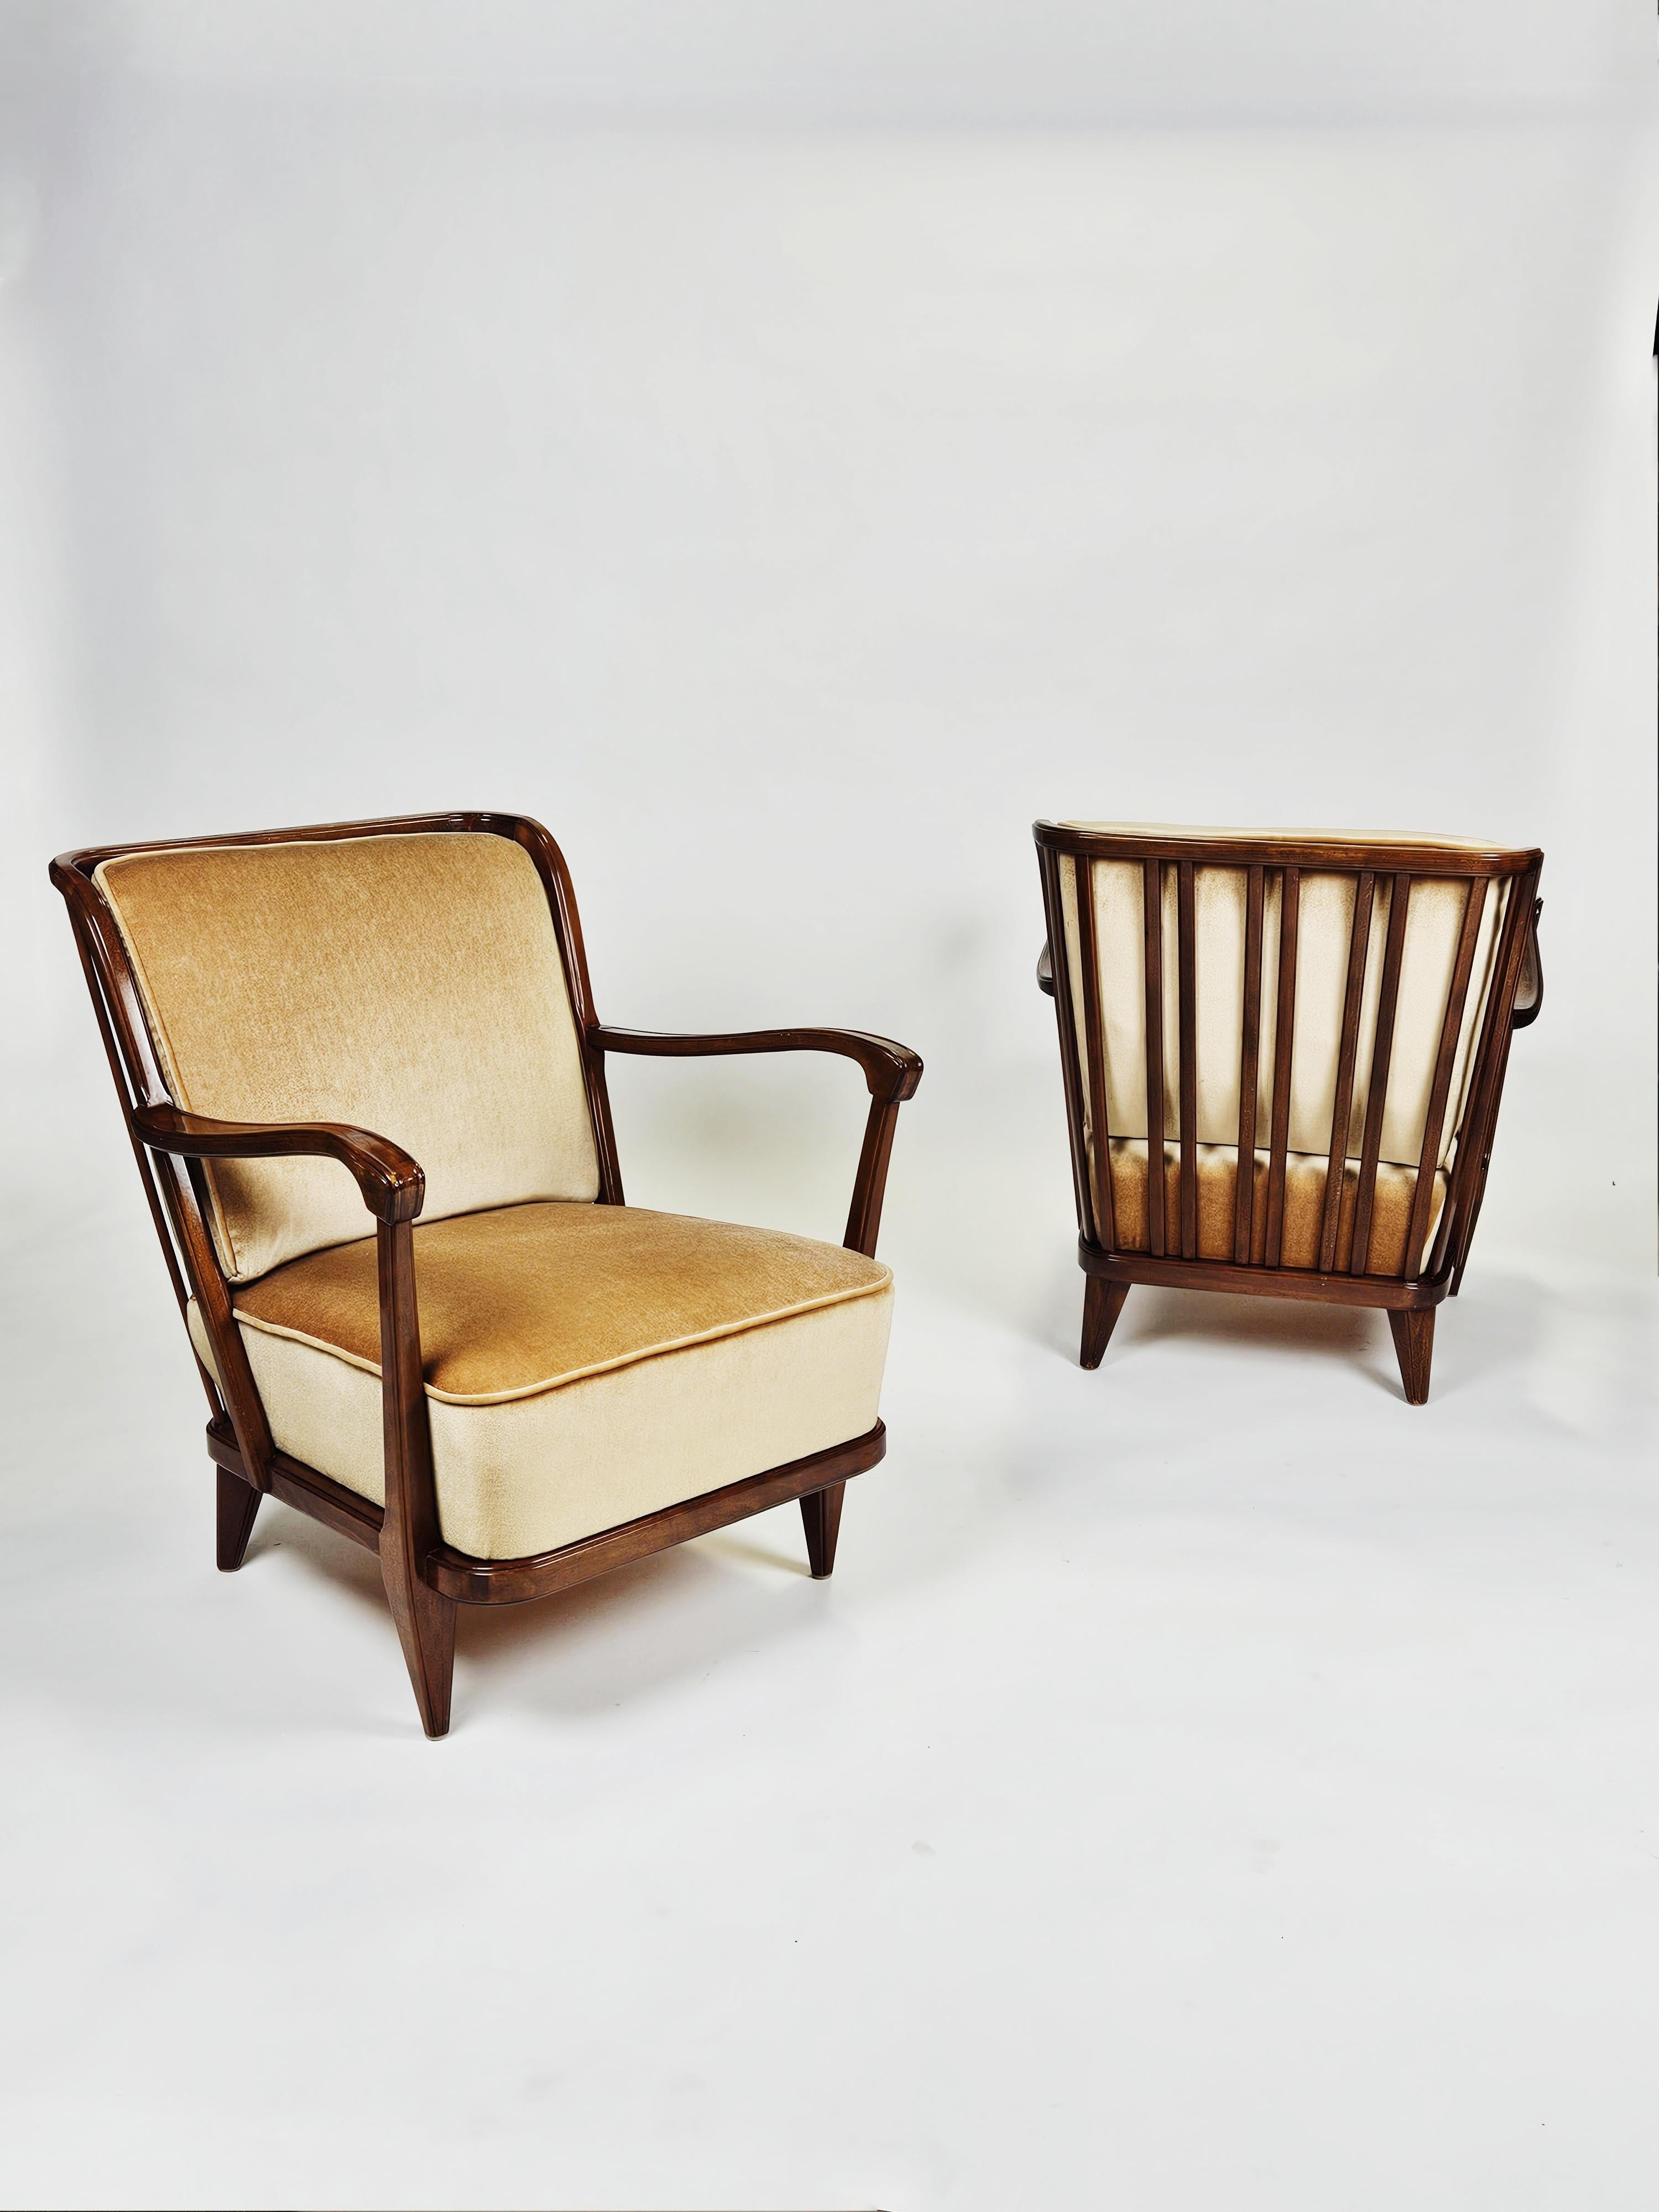 Scandinavian Modern Scandinavian modern armchairs by Svante Skogh, Sweden, 1950s For Sale